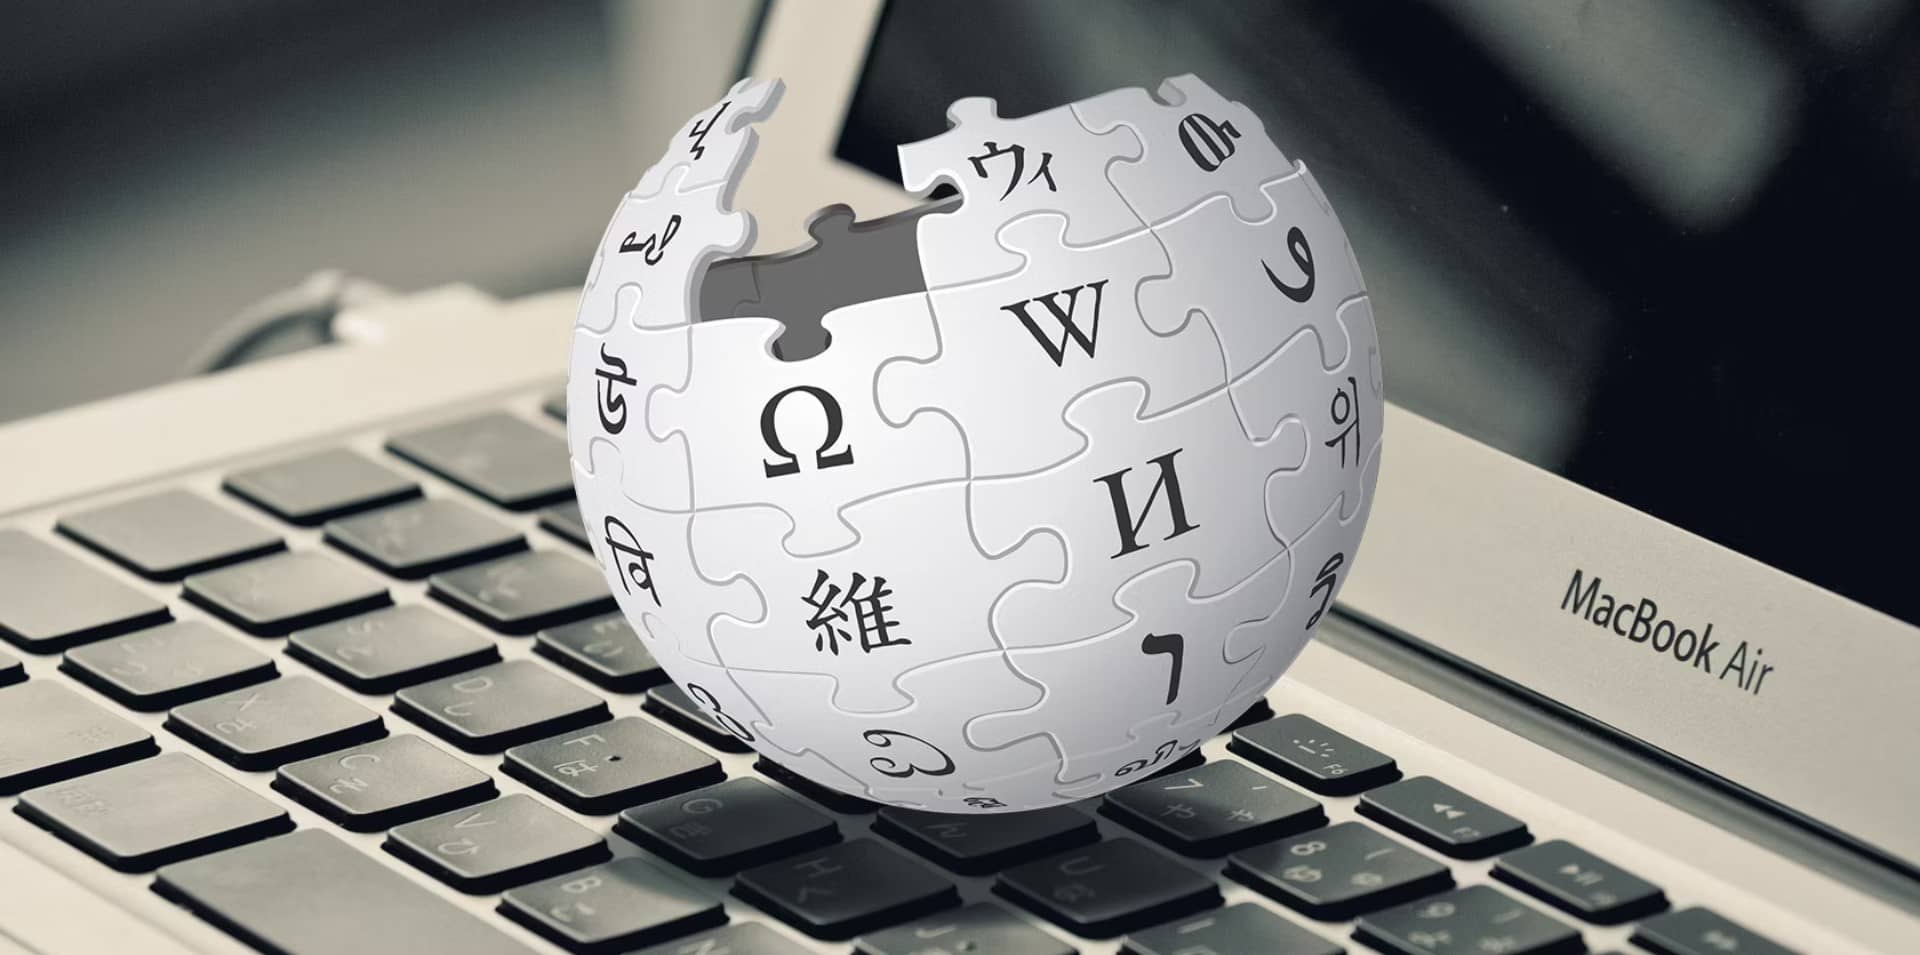 روش های استفاده از ویکی پدیا برای تقویت سئو خارجی چیست؟